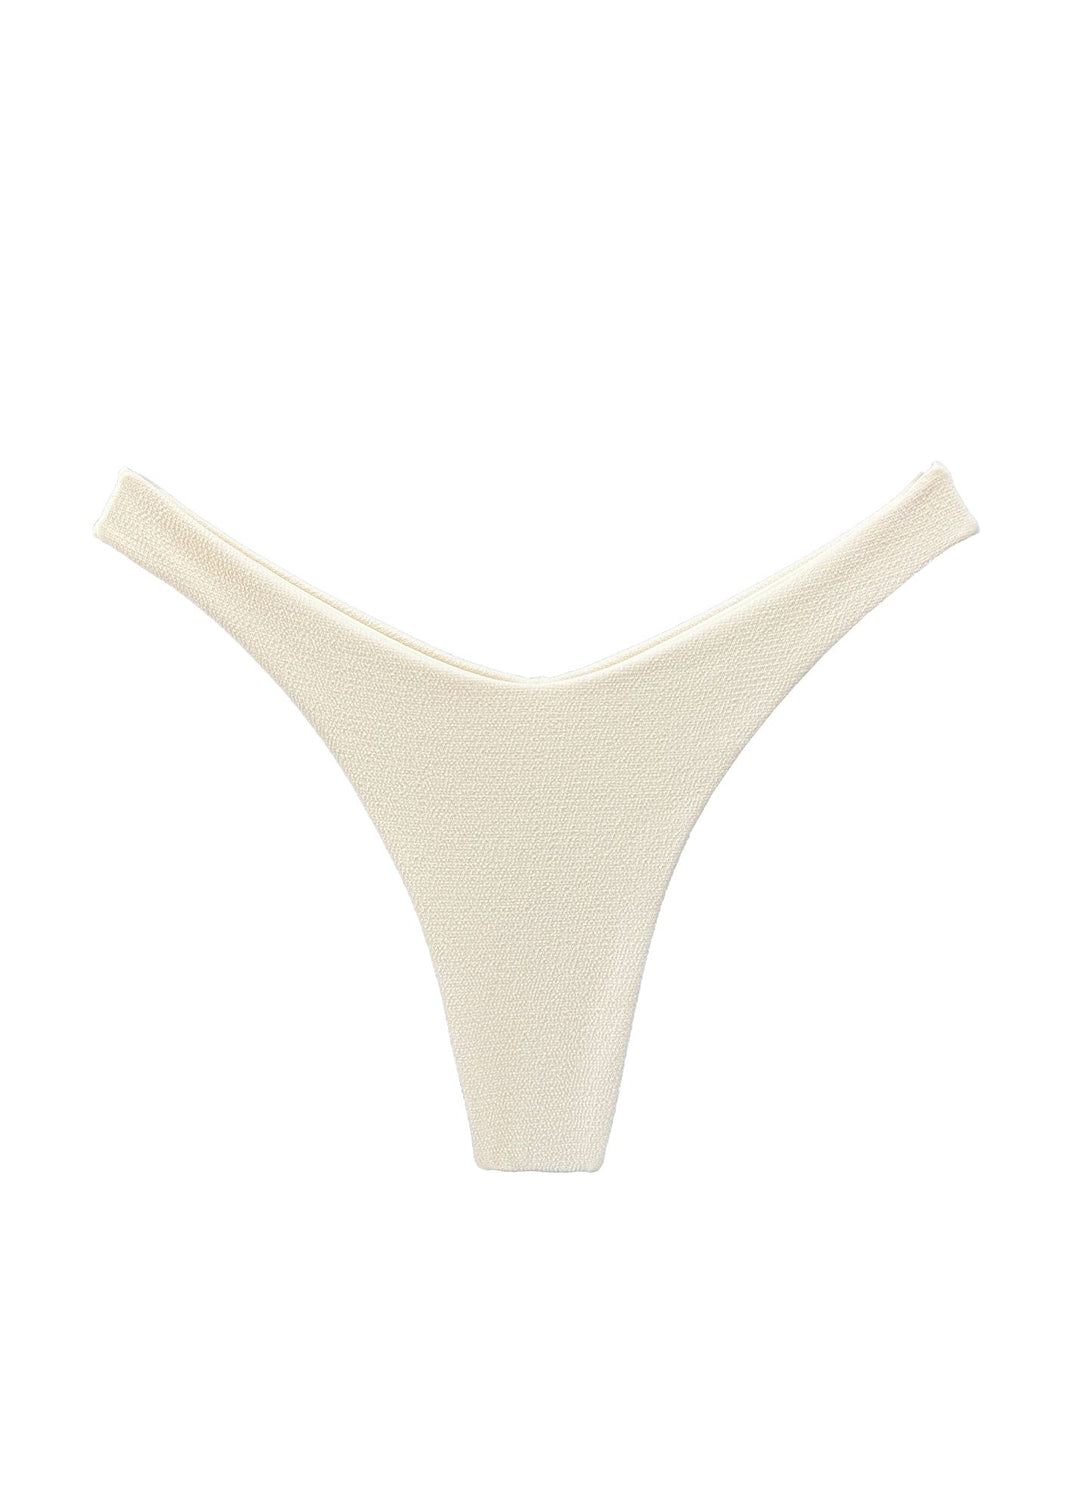 Brigitte Bottom - Duna Sand Naked Swimwear XS 